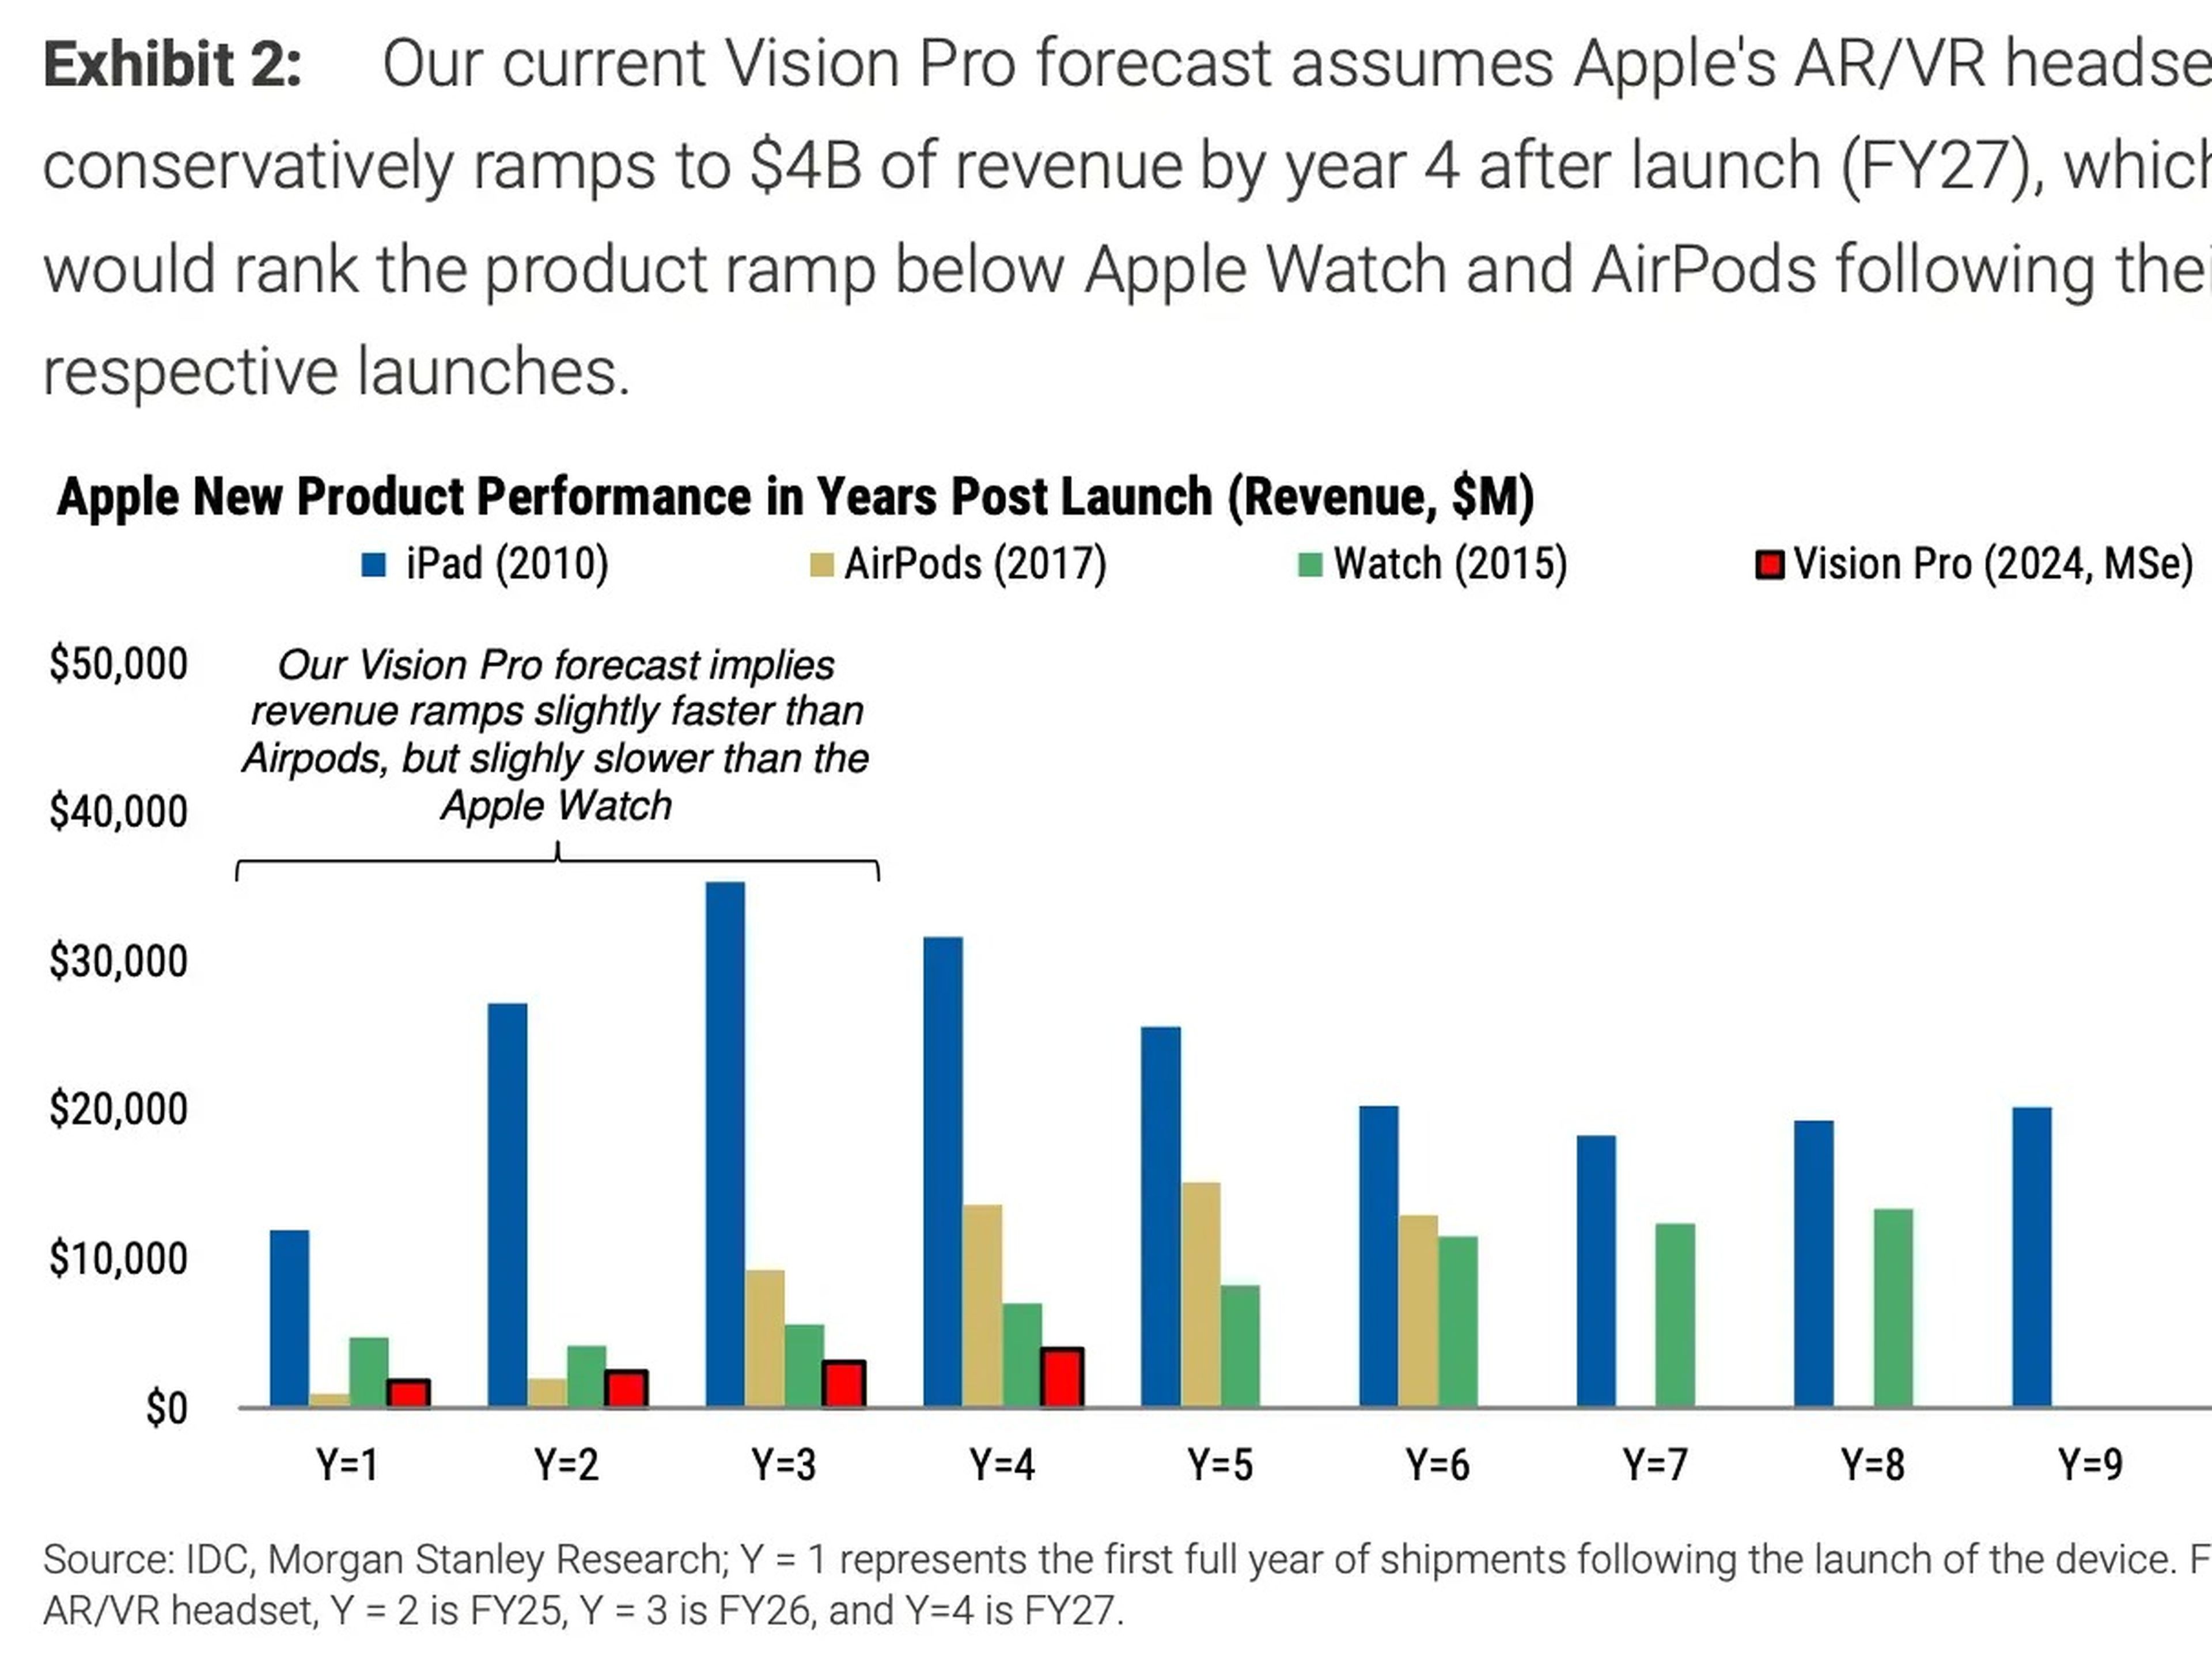 Morgan Stanley espera que las Vision Pro tengan un rendimiento inferior al del Apple Watch en los próximos años.